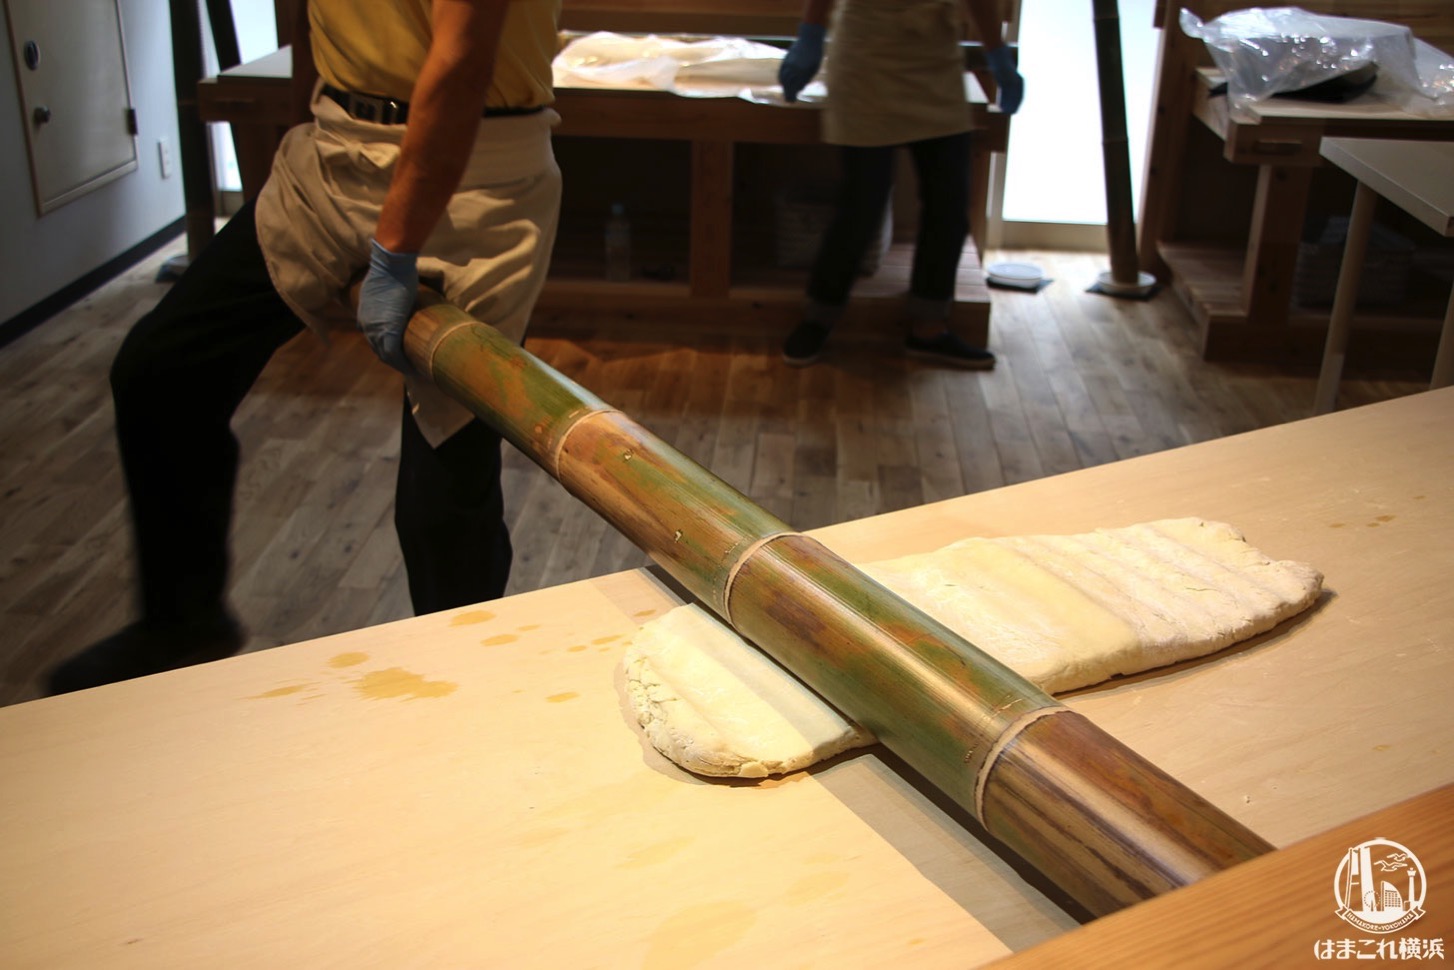 新横浜ラーメン博物館で青竹打ち麺作り体験開始！粉から作って試食まで